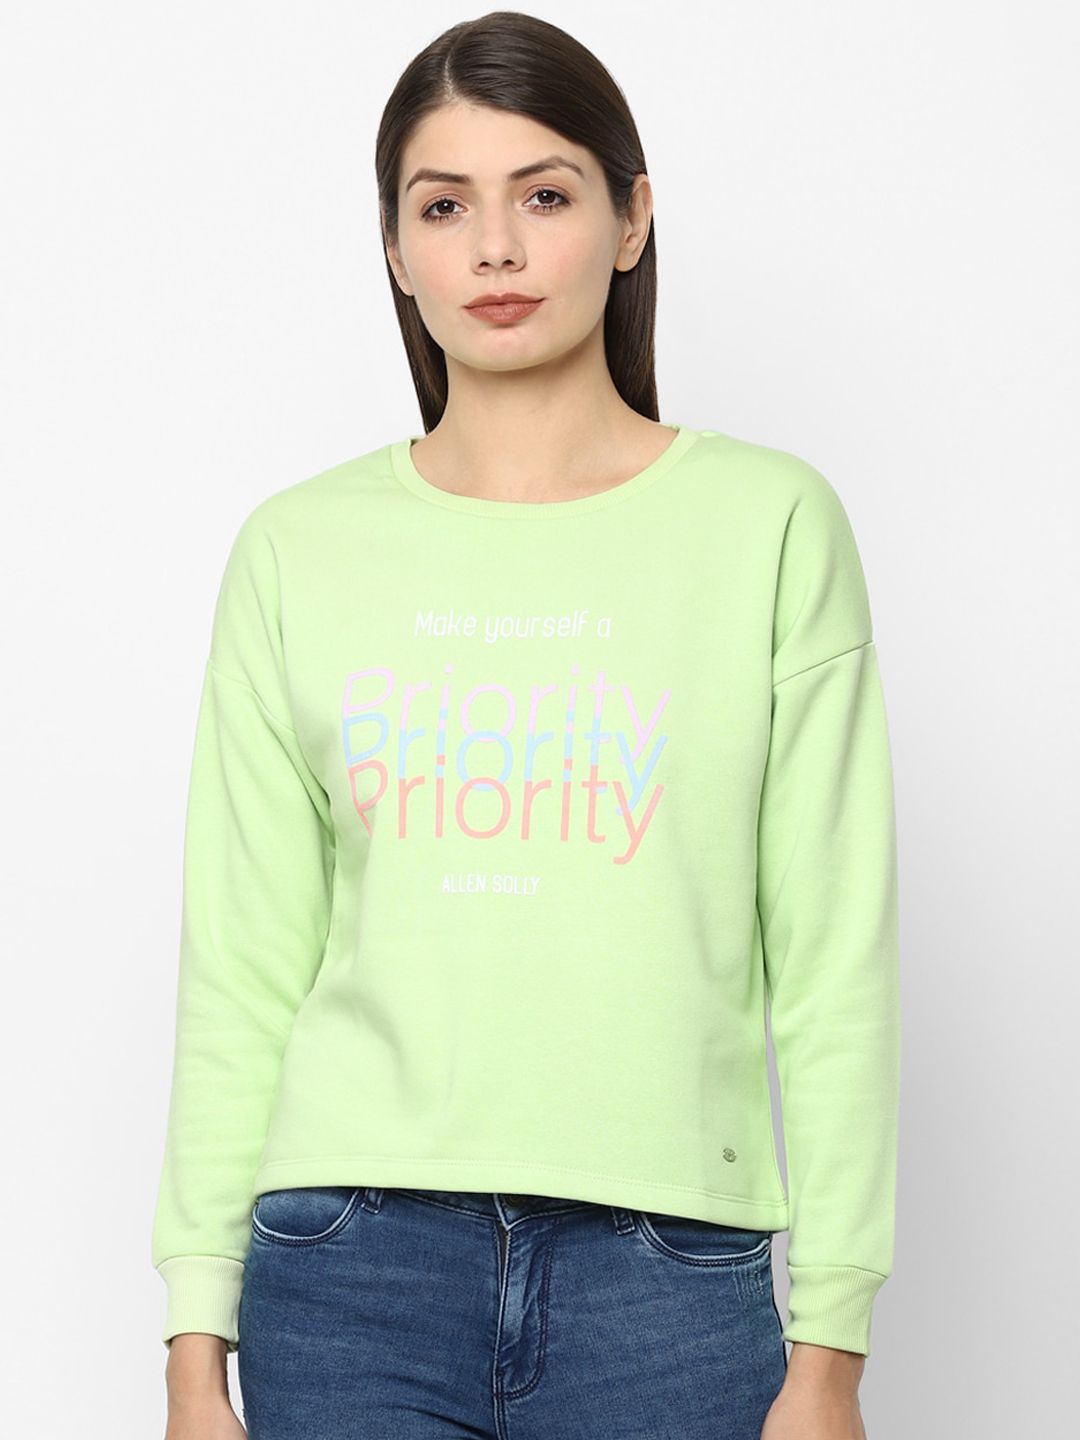 Allen Solly Woman Women Green Printed Sweatshirt Price in India